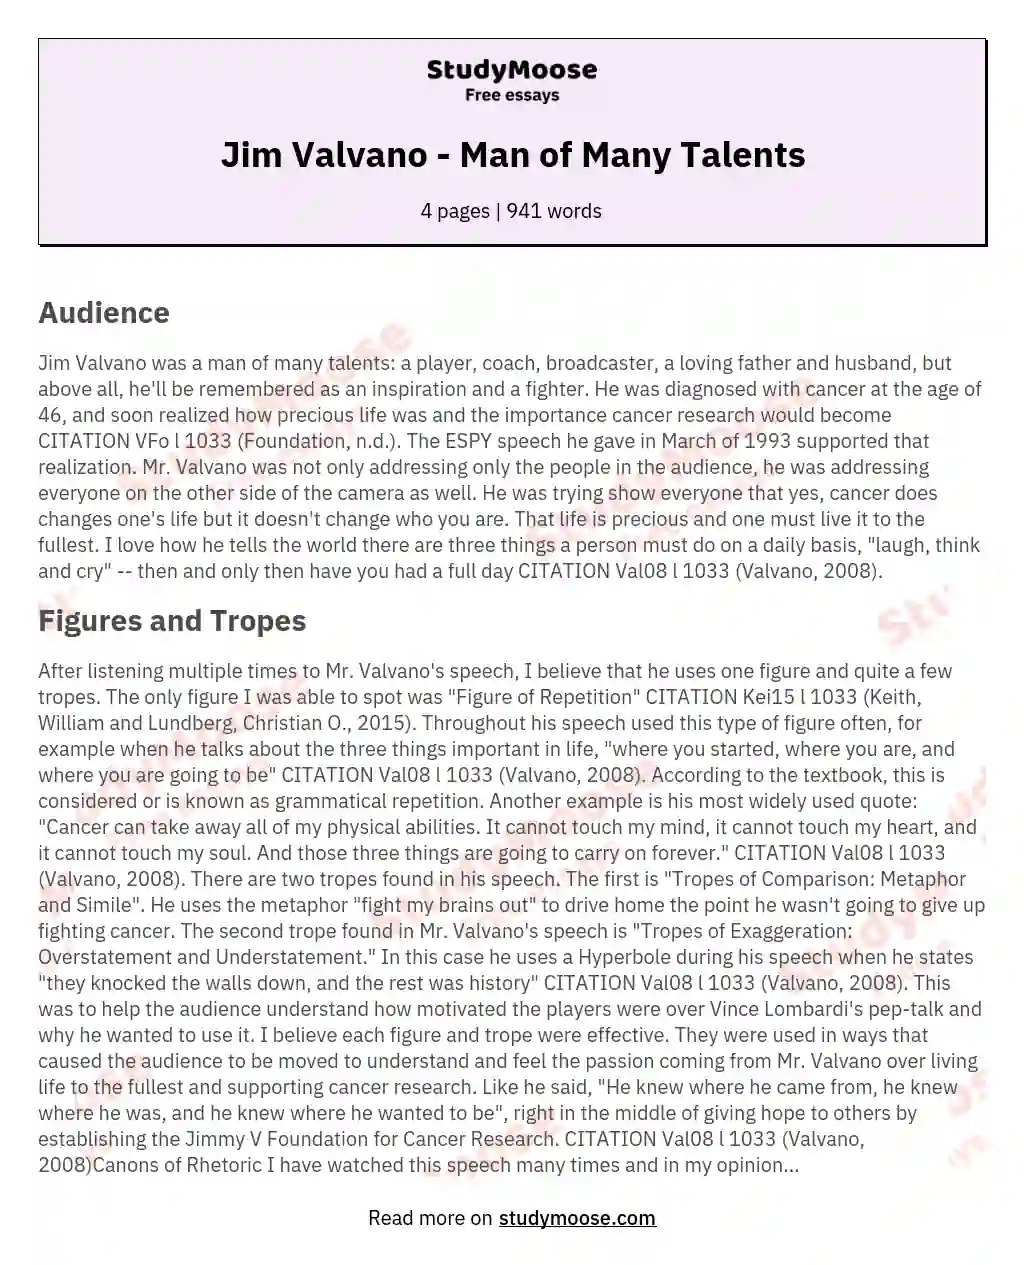 Jim Valvano - Man of Many Talents essay